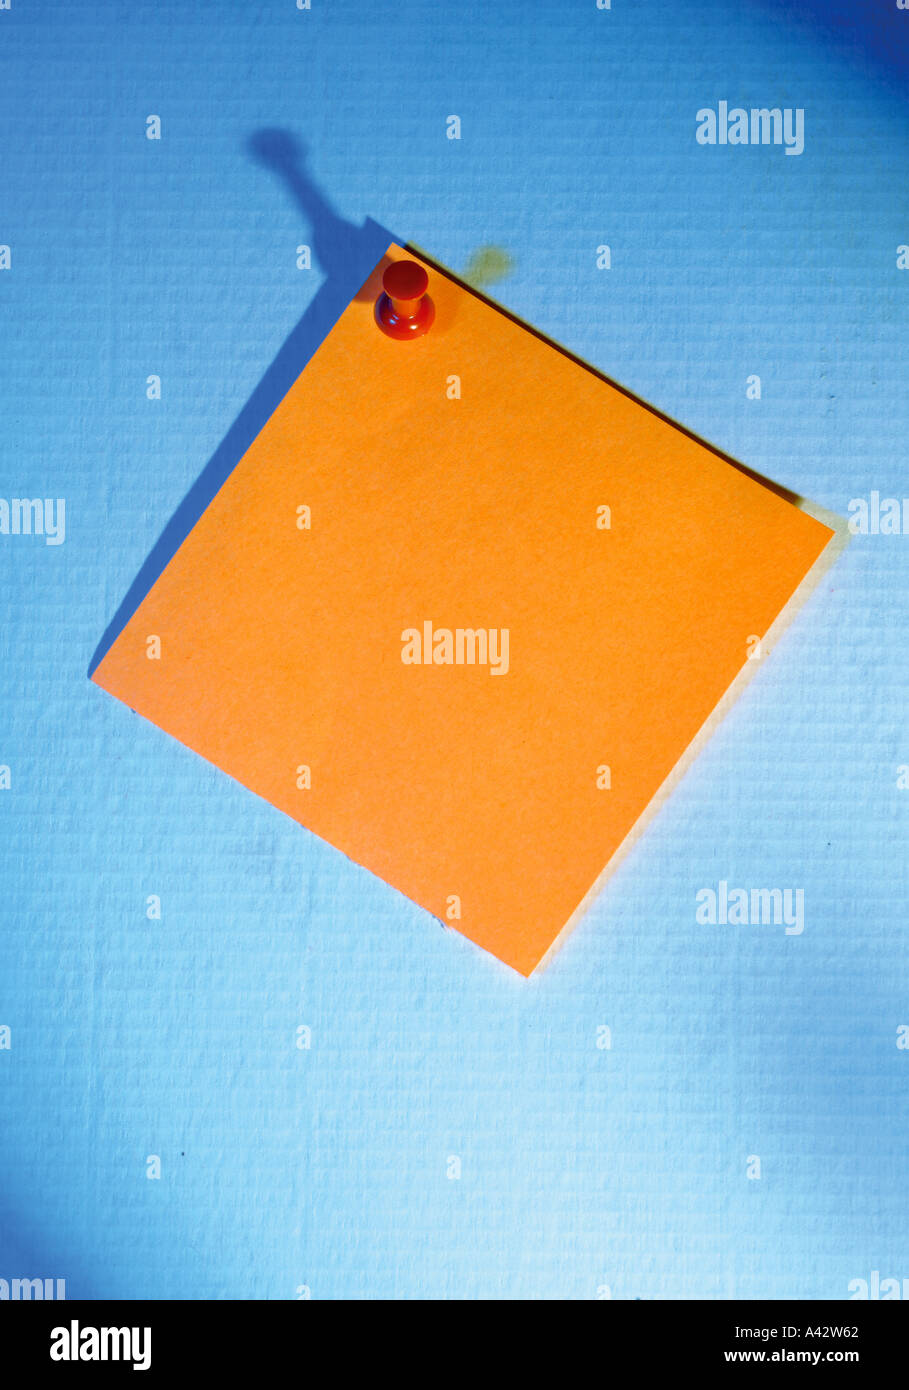 PIN und orange Hinweis Orangener Notizzettel Mit Pin Stockfoto